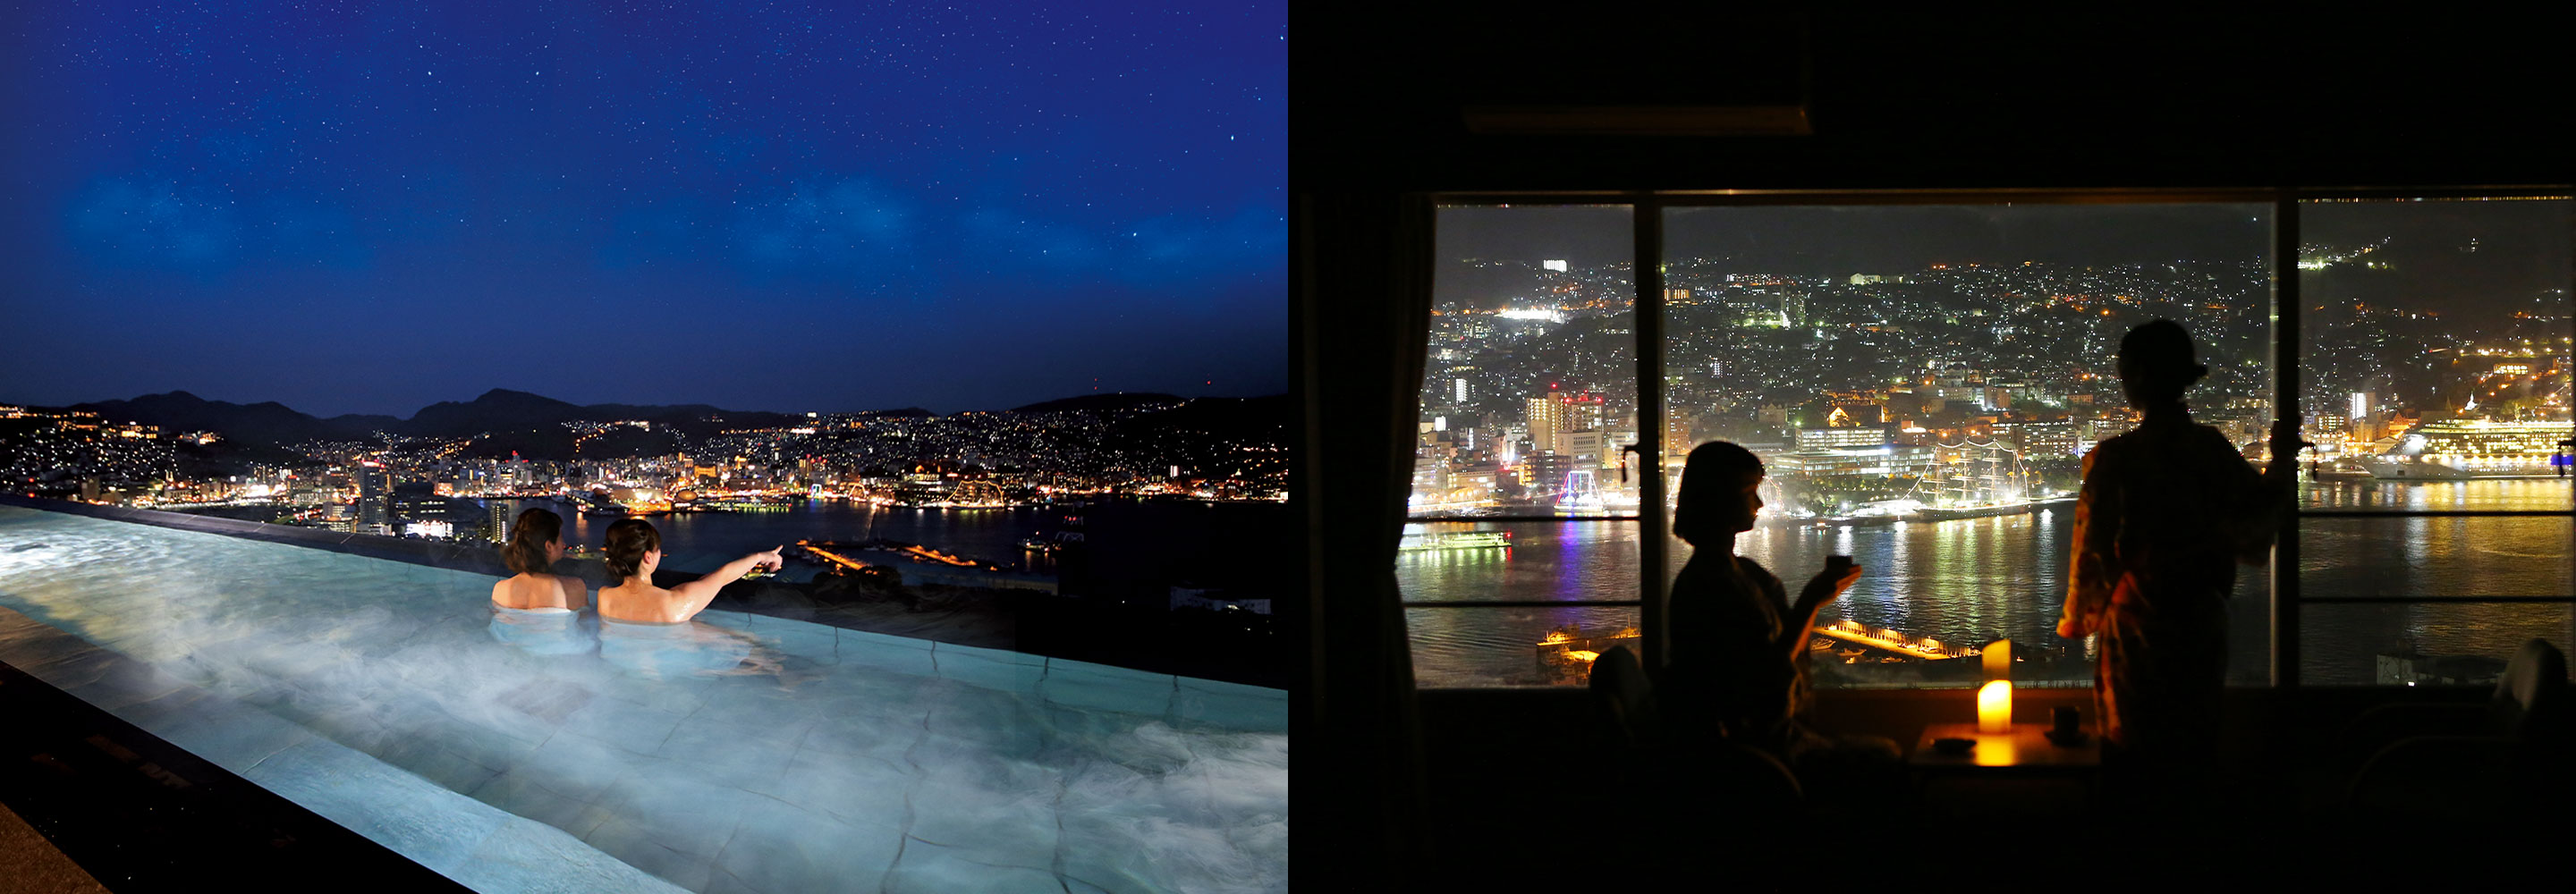 温泉、客室、レストランから。世界新三大夜景を見渡す絶景温泉ホテル